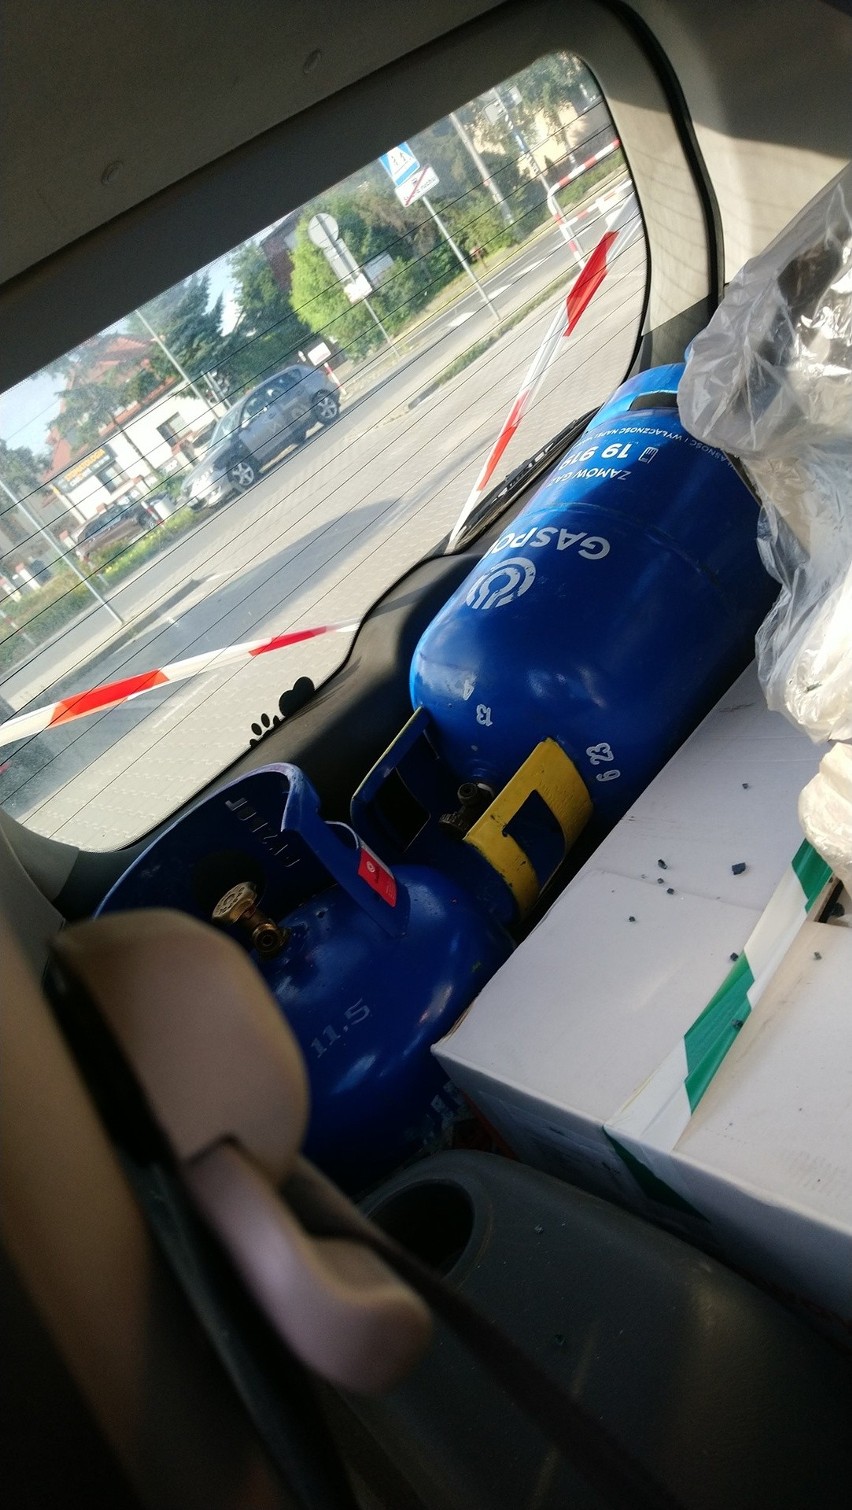 Butle z gazem we wraku samochodu przy szkole podstawowej w Poznaniu